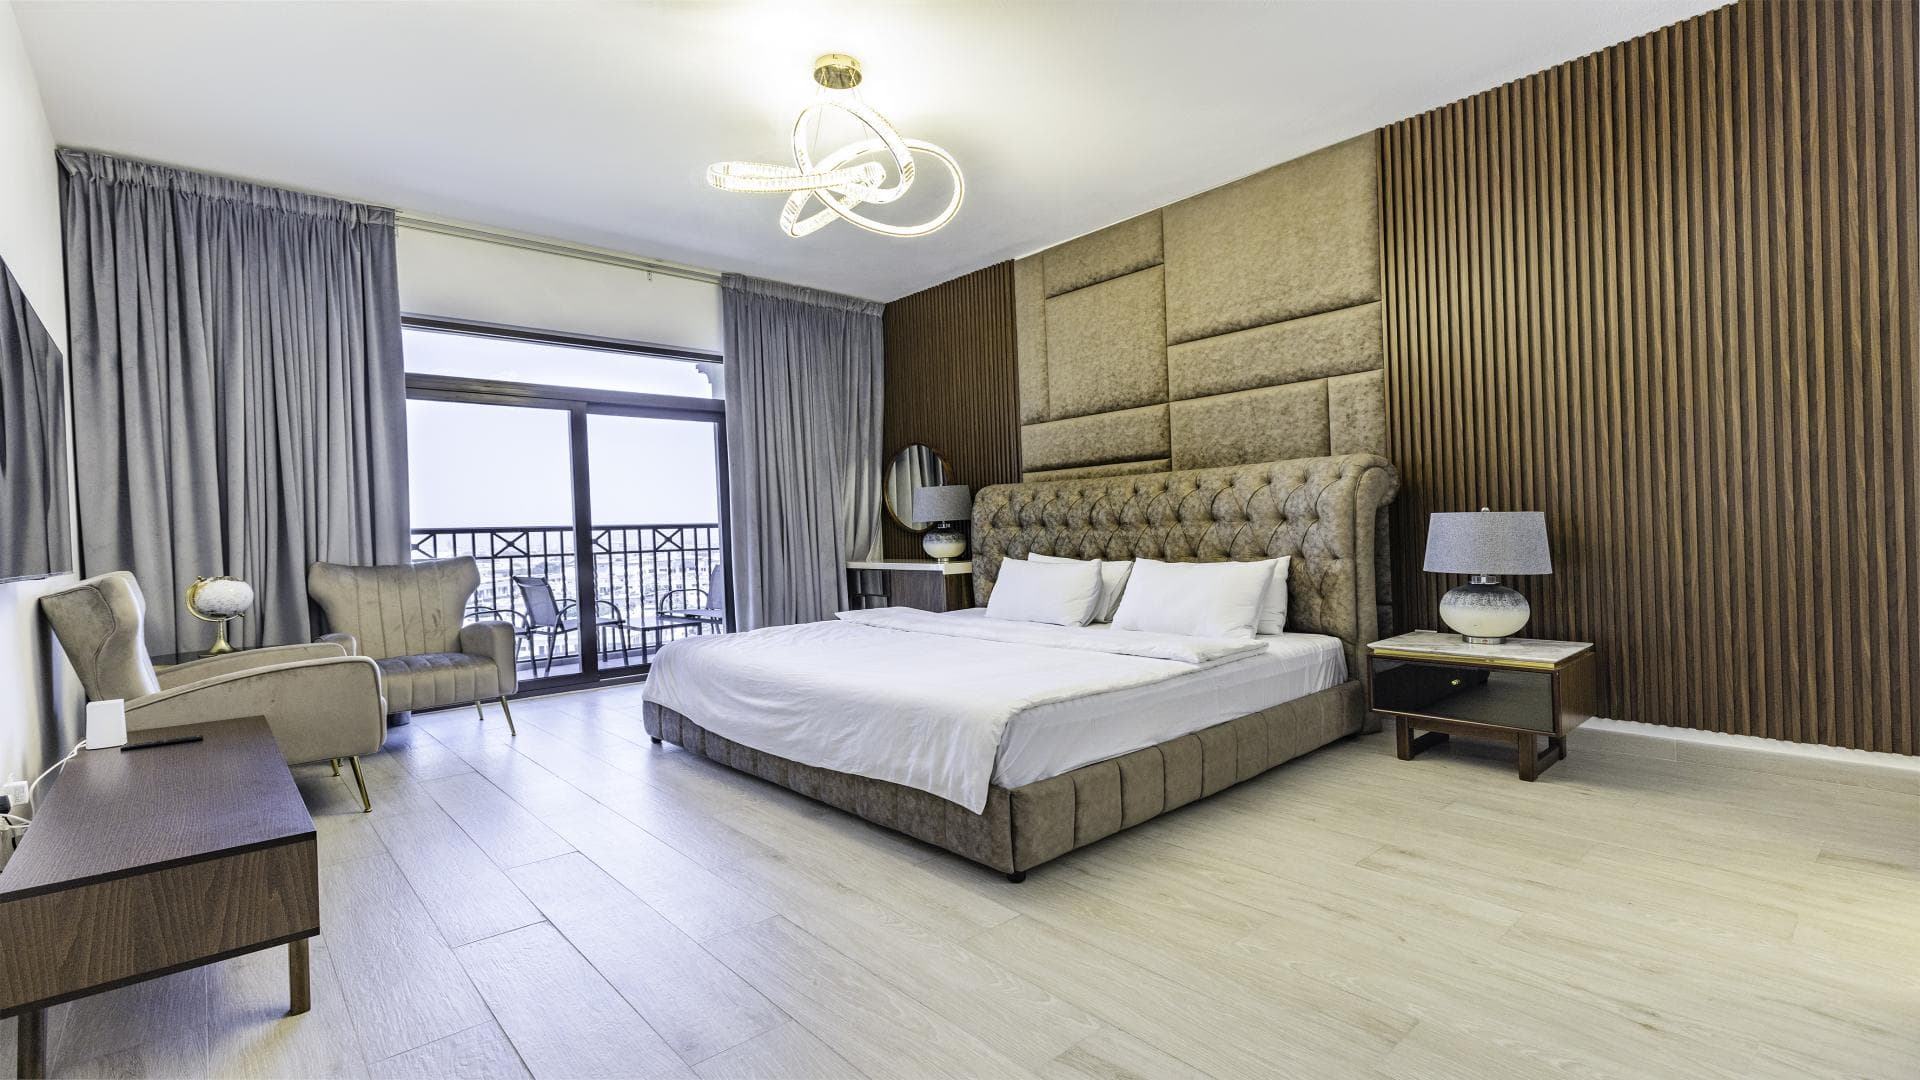 4 Bedroom Apartment For Rent Madinat Jumeirah Living Lp20938 D03fe91f211c20.jpg